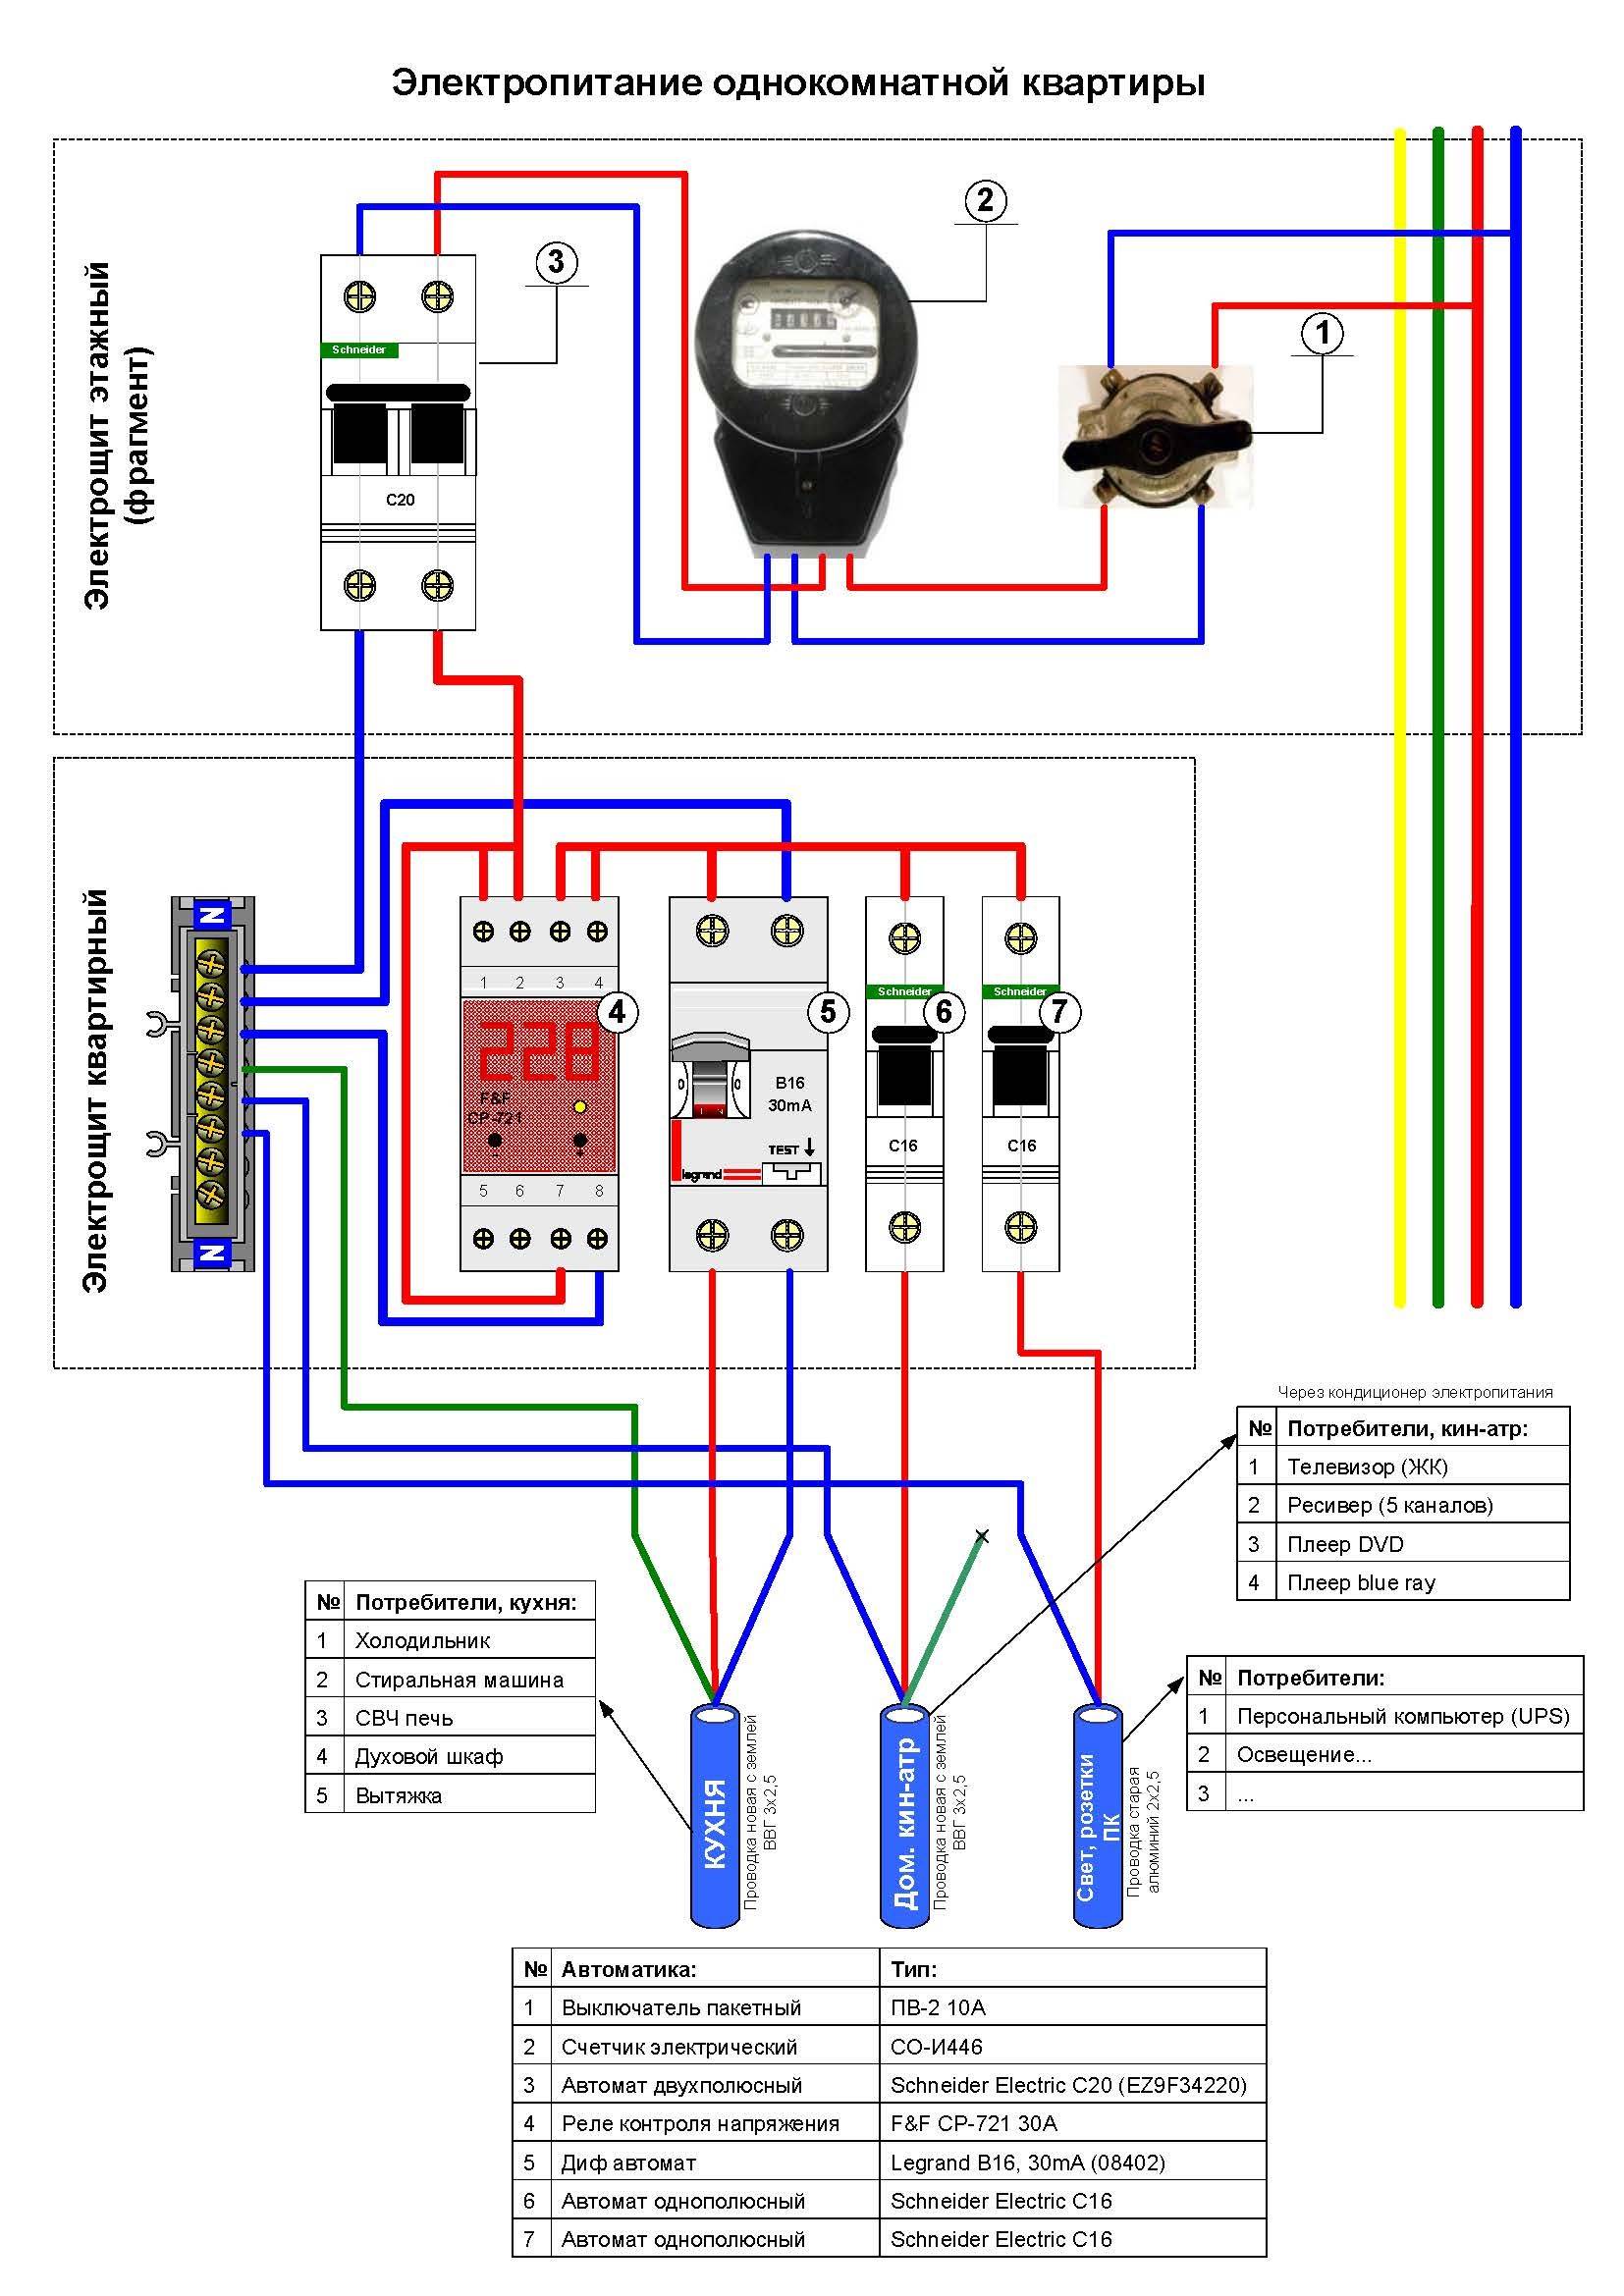 Реле контроля фаз и напряжения: устройство, принцип работы, схемы подключения, характеристики, обзор моделей